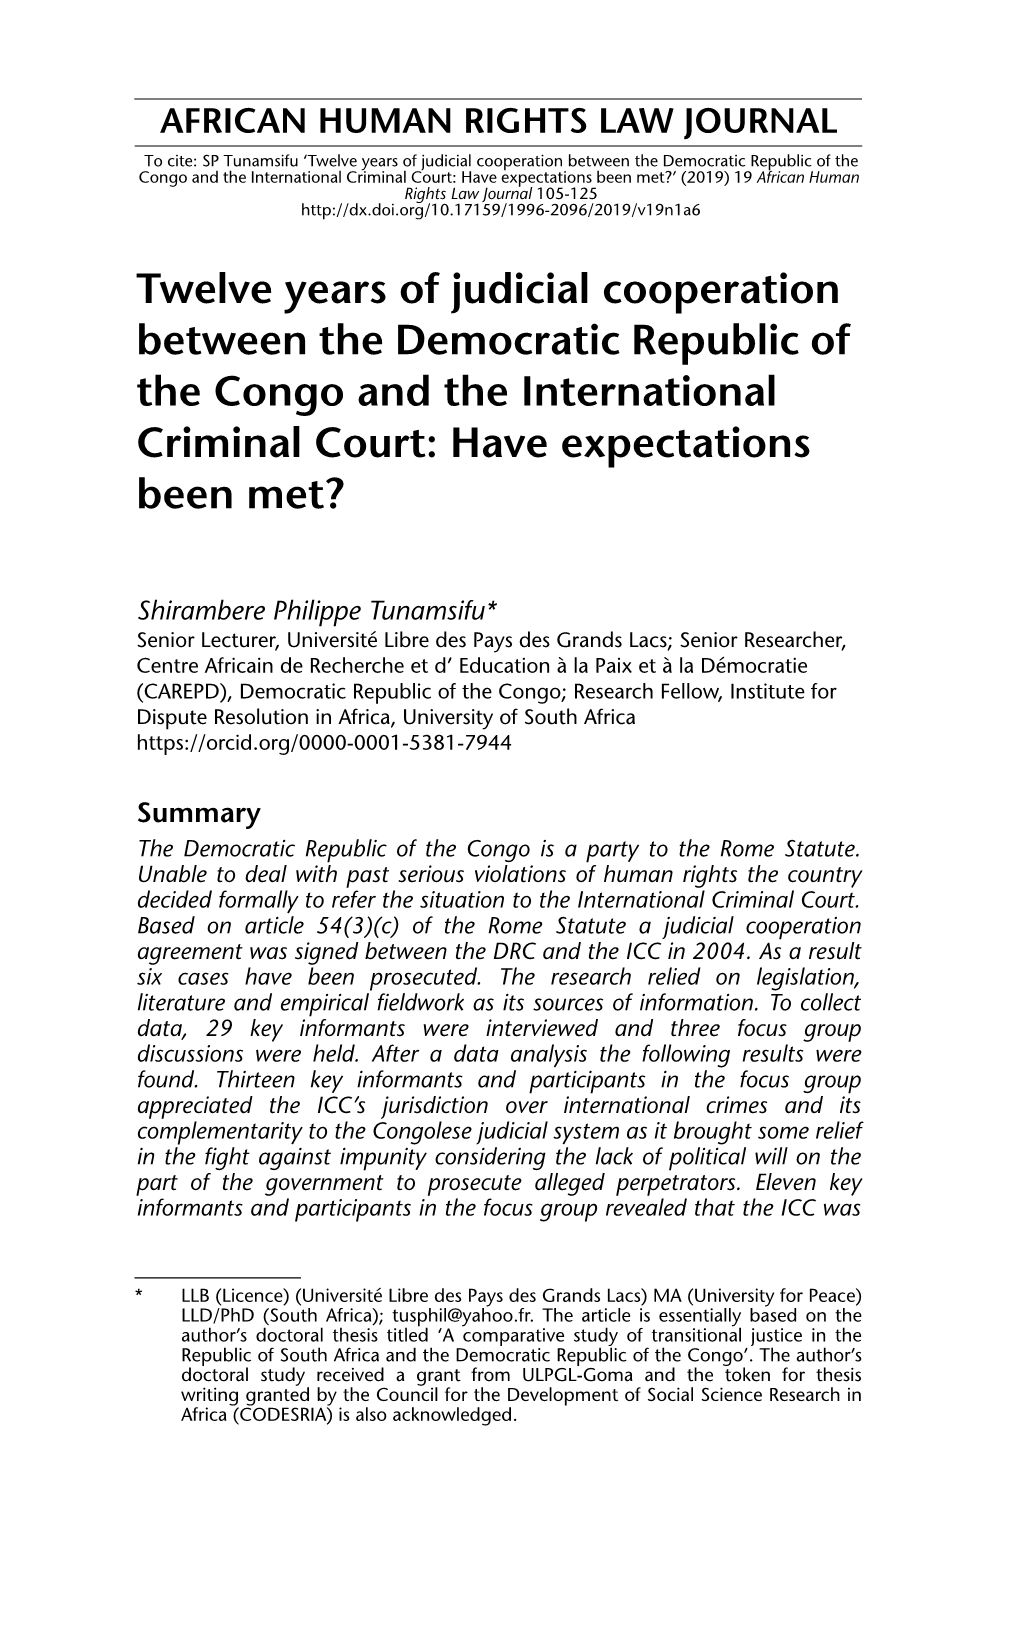 Twelve Years of Judicial Cooperation Between the Democratic Republic